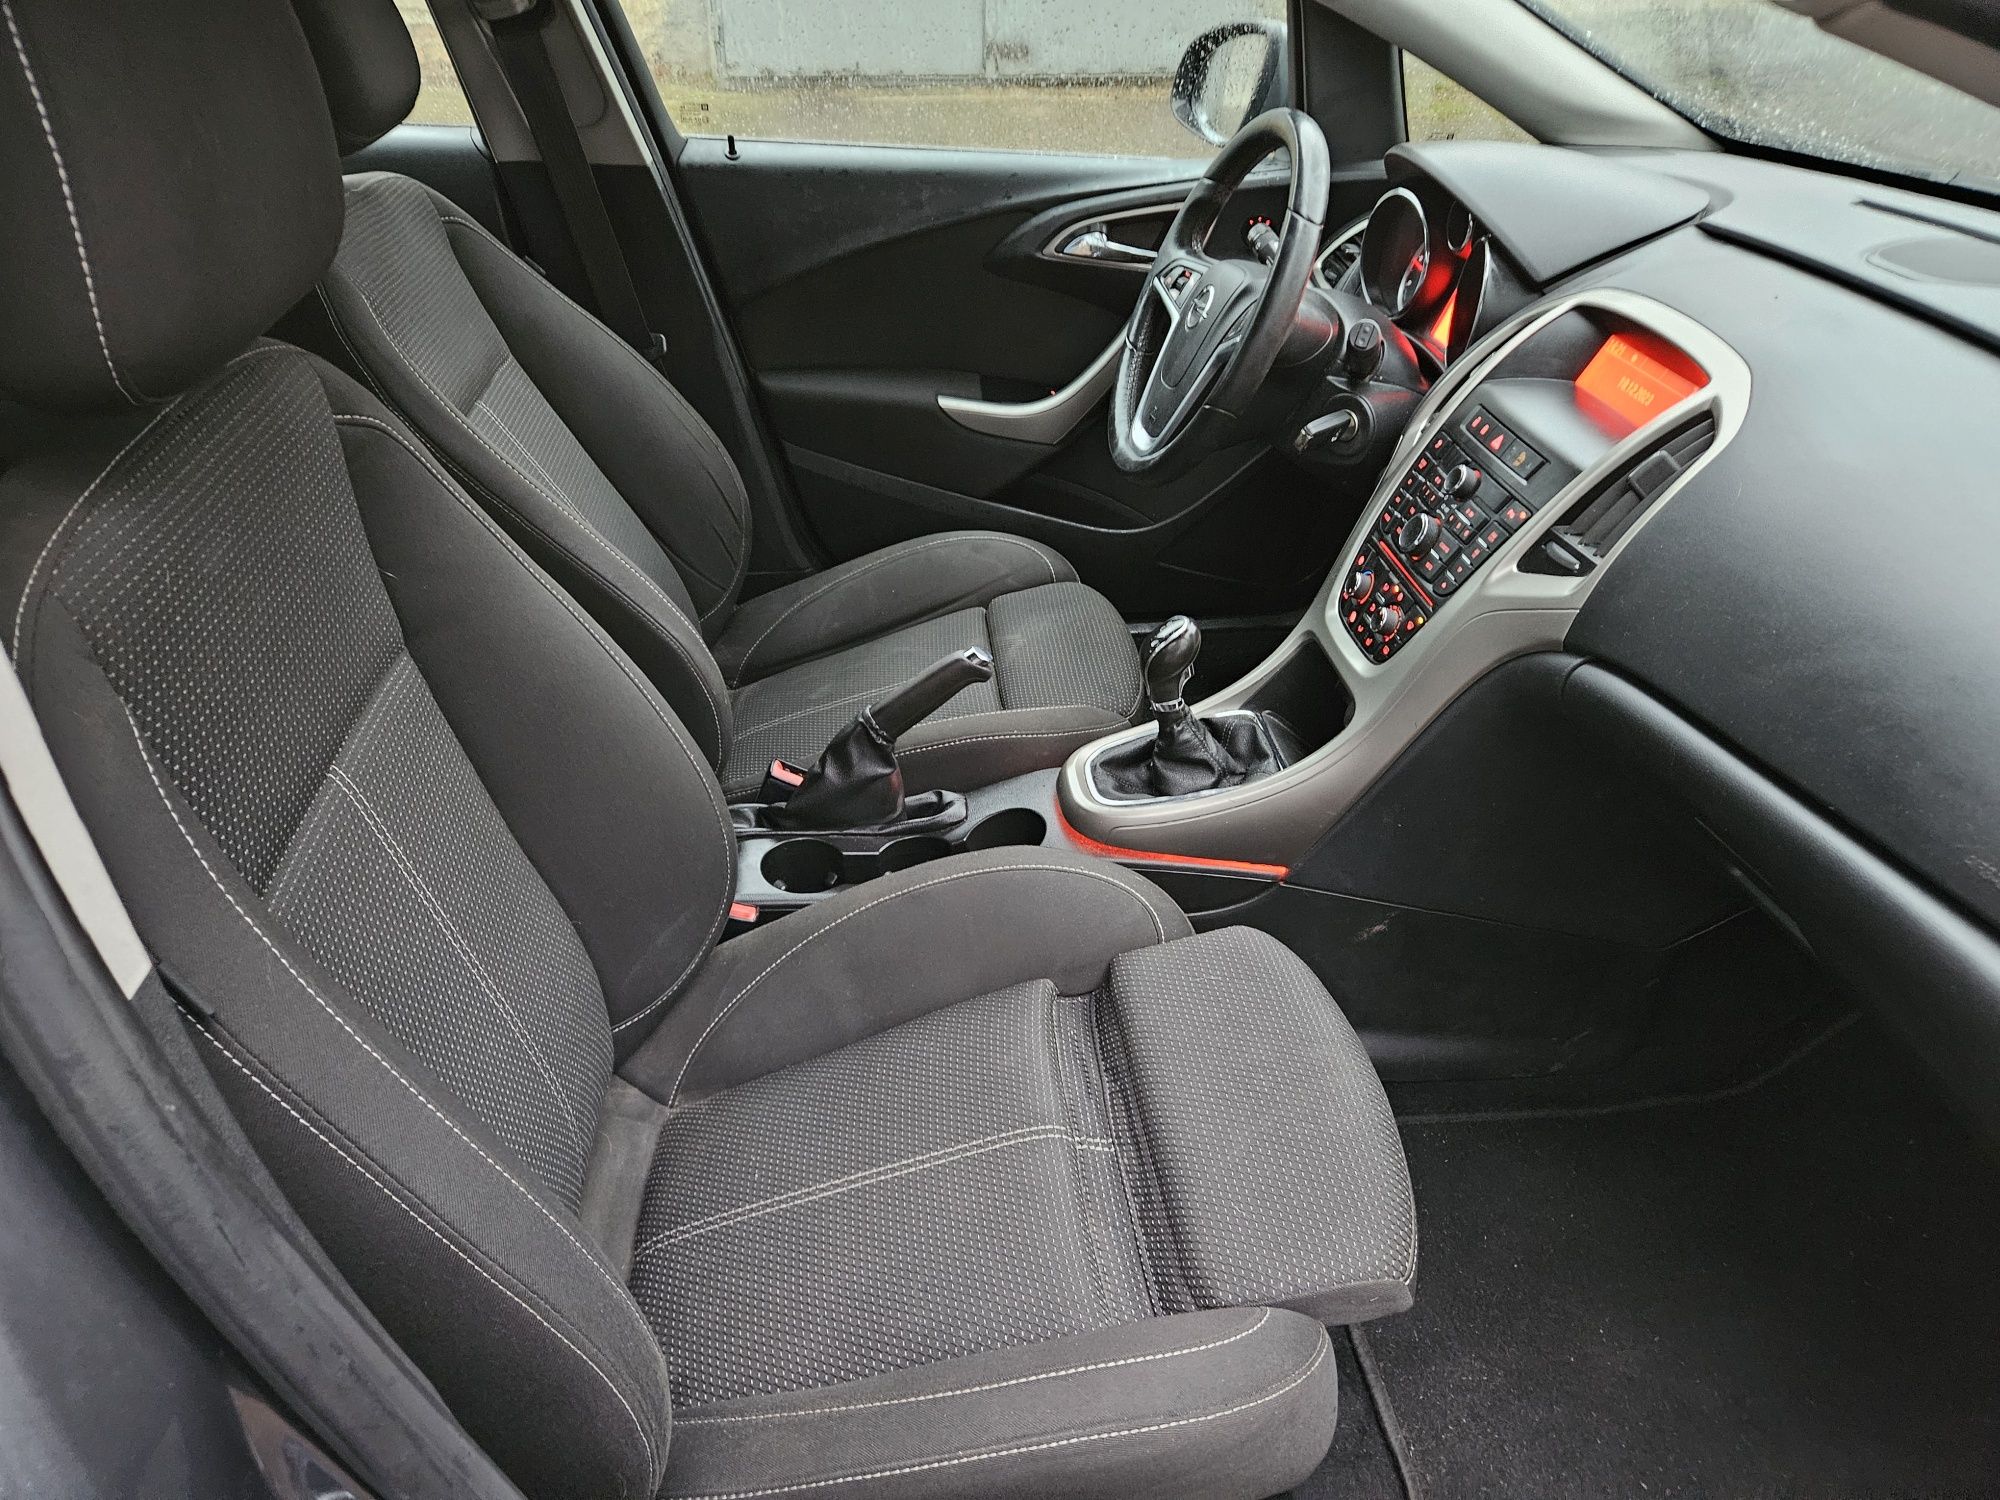 Opel Astra J 2011r 1,7 cdti, zadbana